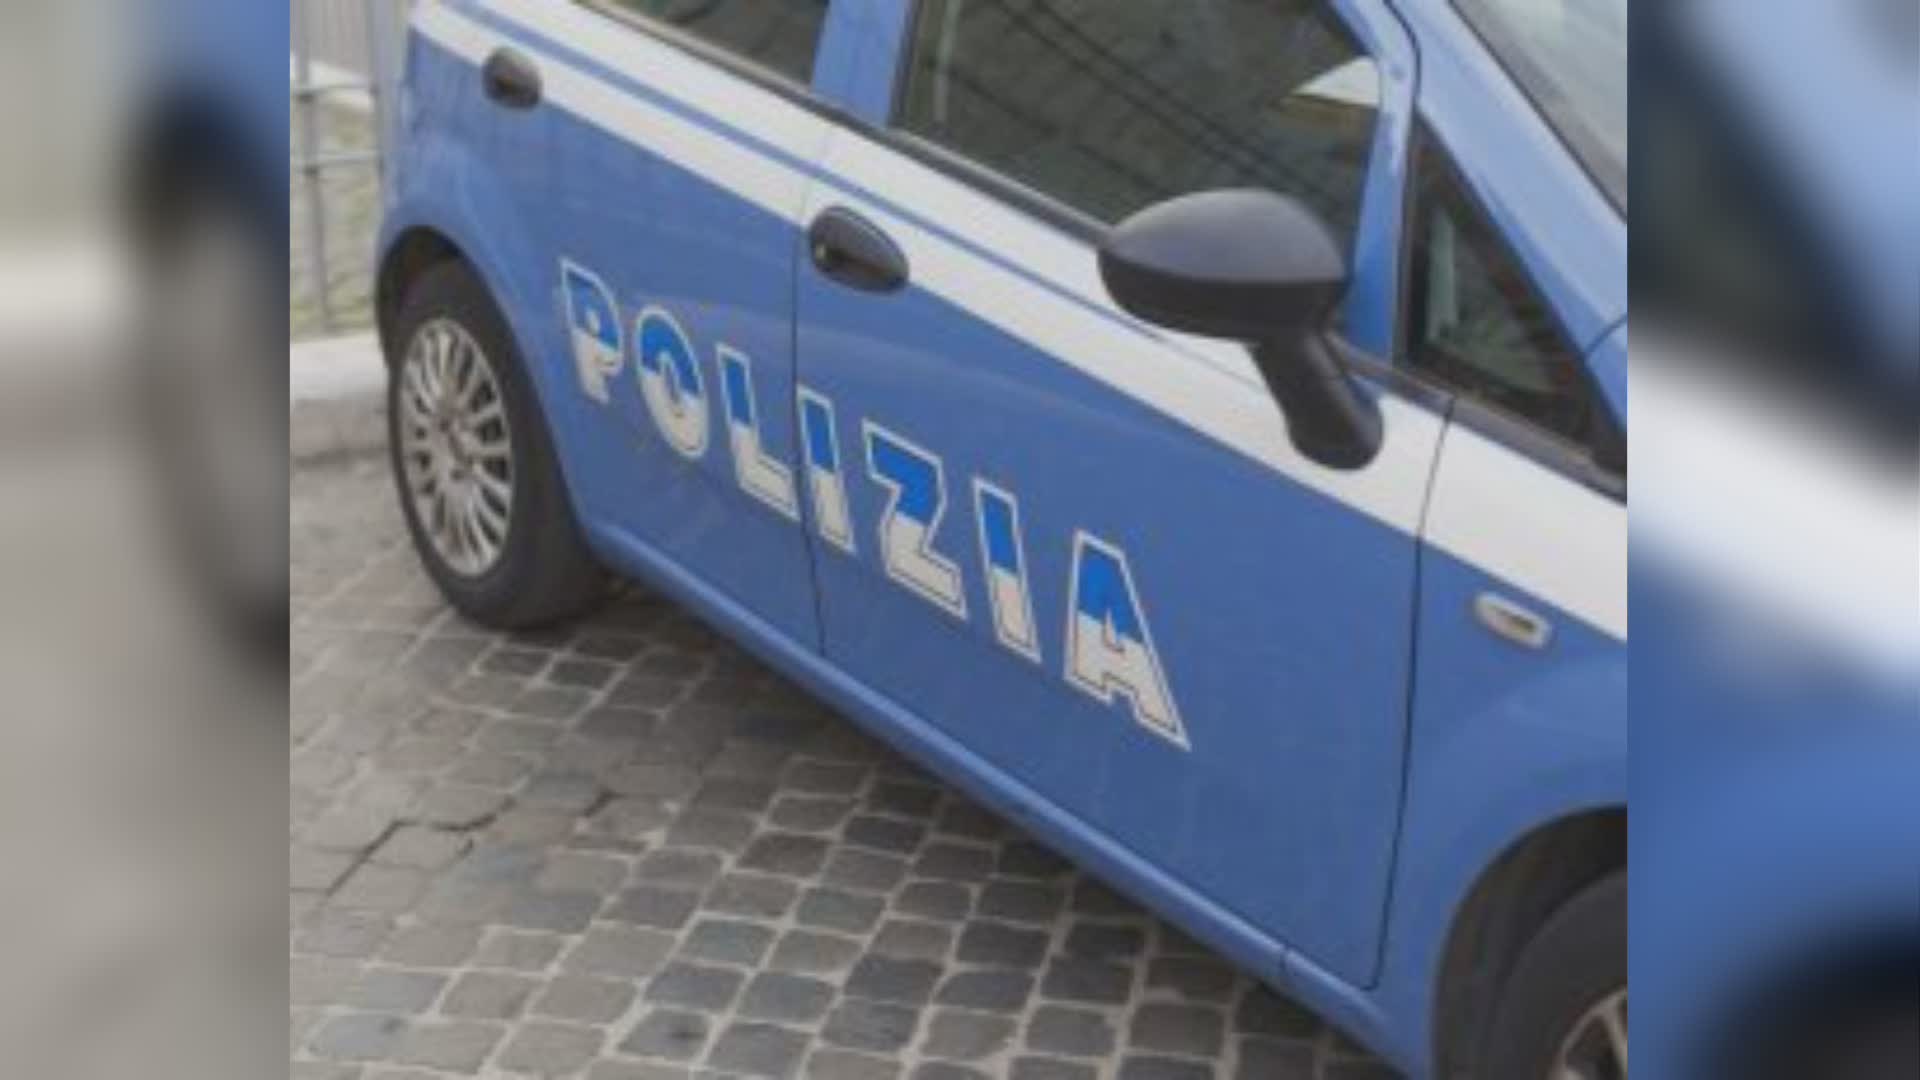 Genova: accusa di furto una dipendente e l'accoltella a una mano